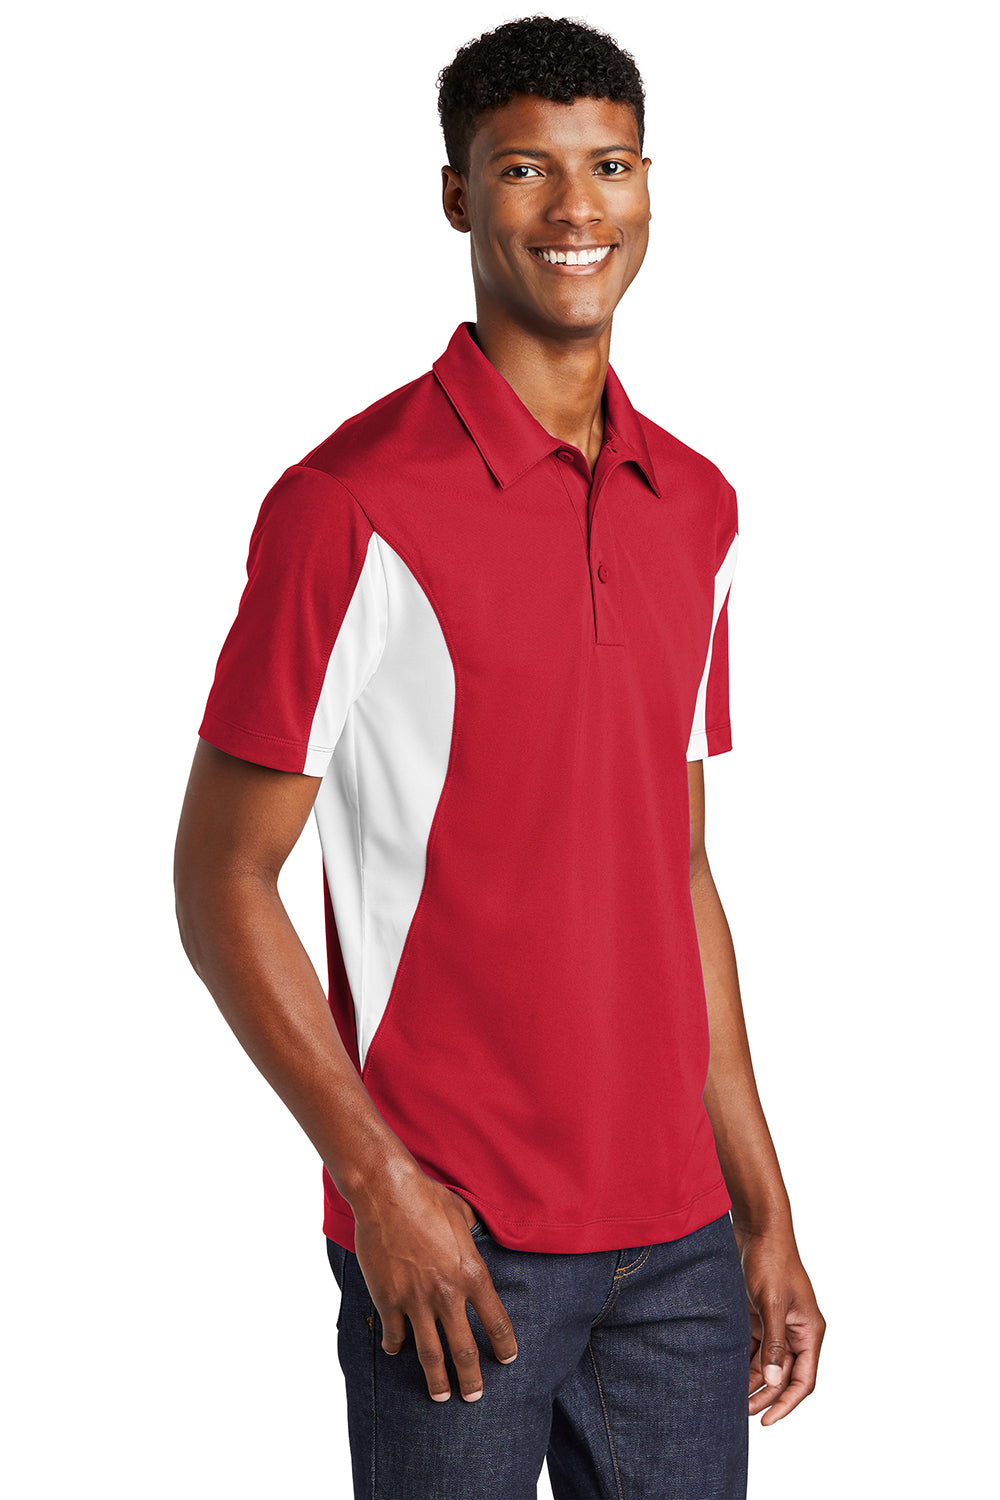 Sport-Tek Mens Sport-Wick Moisture Wicking Short Sleeve Polo Shirt True Red/White 3Q